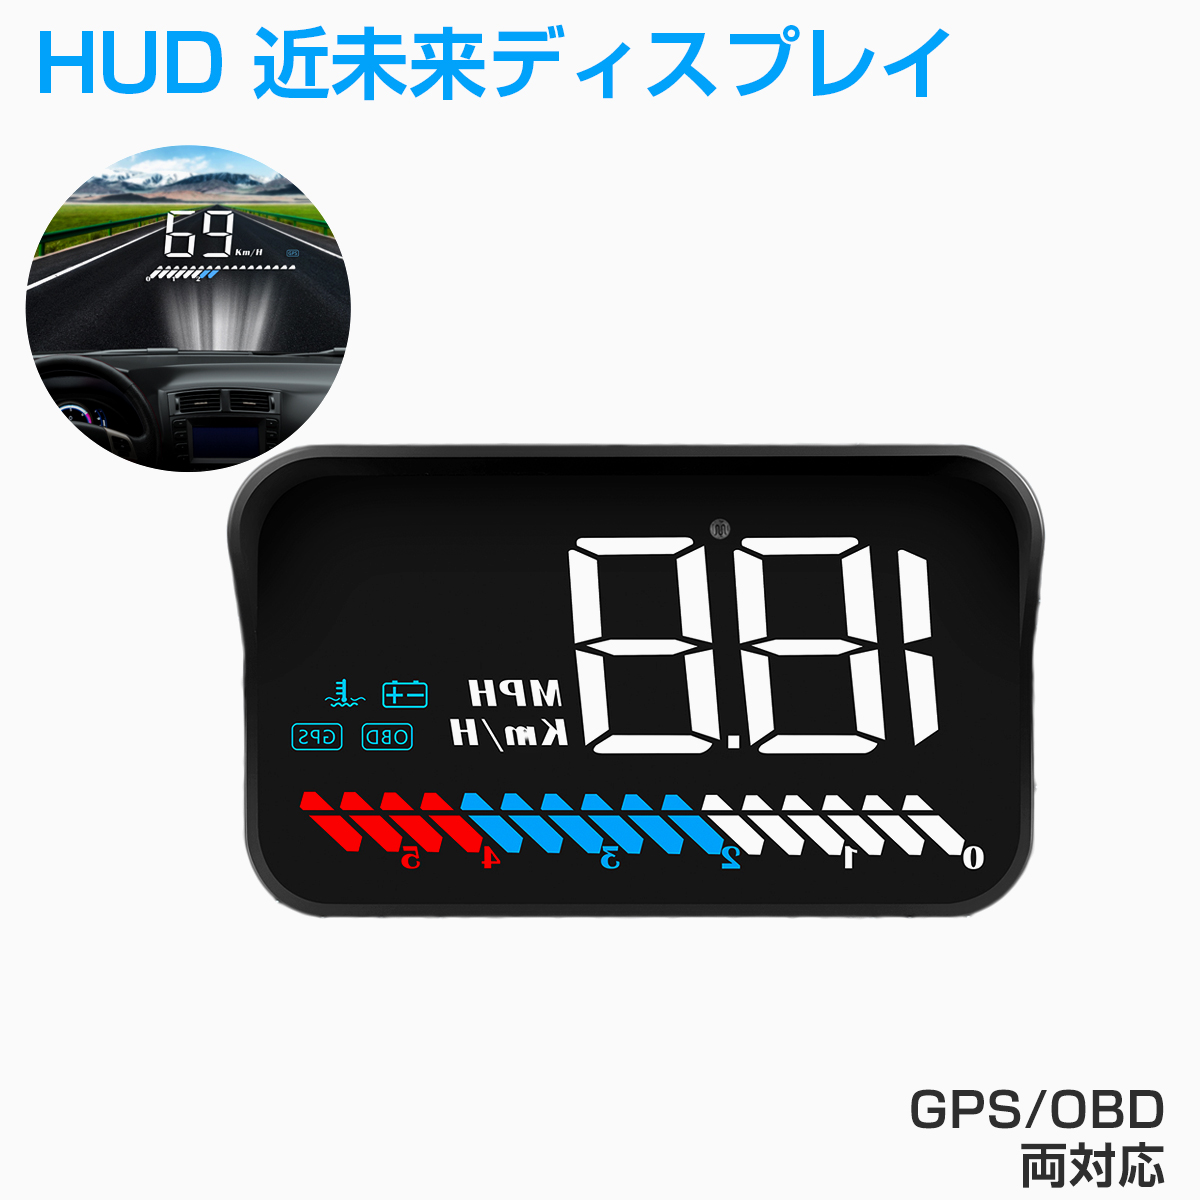 楽天市場 Sdl ヘッドアップディスプレイ Hud M7 Obd2 Gps速度計 車 大画面 カラフル 日本語説明書 車載スピードメーター ハイブリッド 車対応 フロントガラス 回転数 水温 警告機能 6ヶ月保証 ｋｍサービス